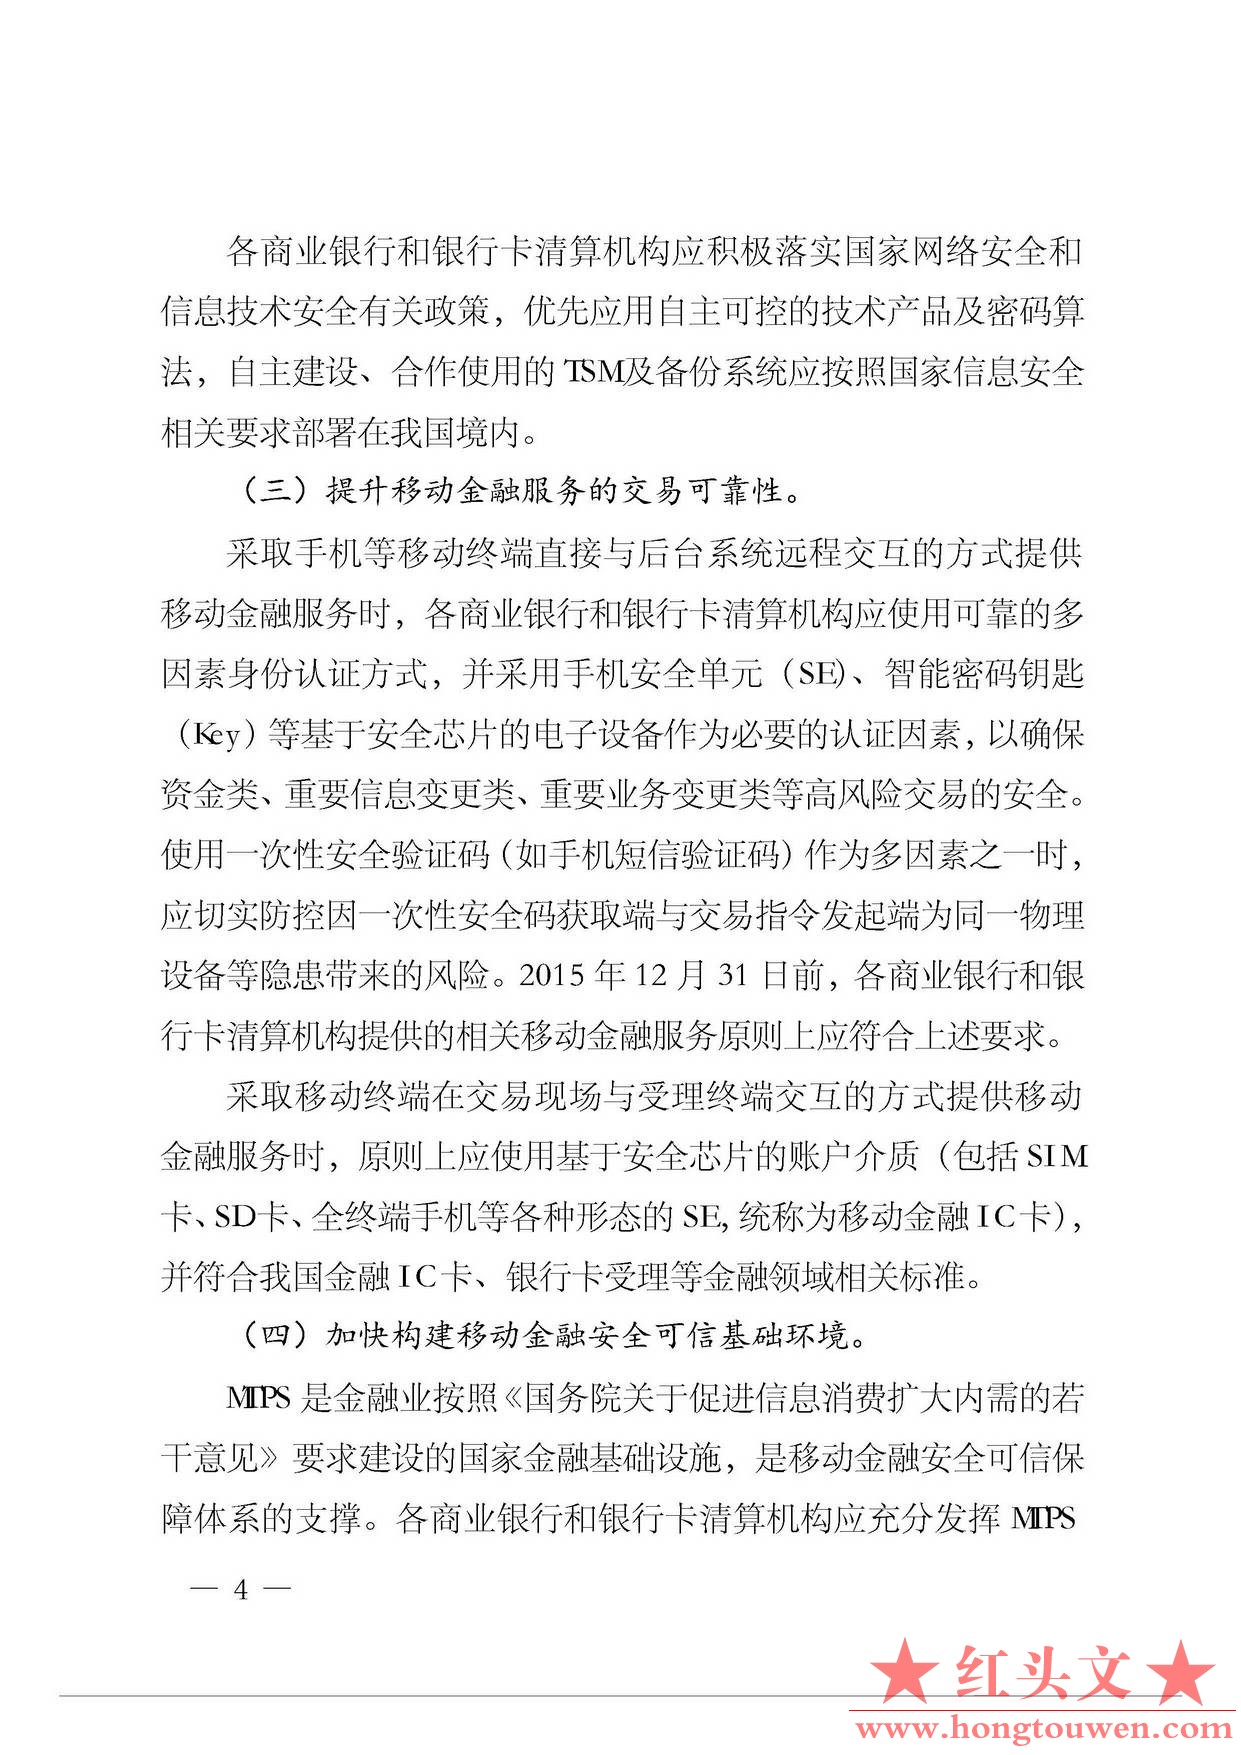 银发[2015]11号-中国人民银行关于推动移动金融技术创新健康发展的指导意见_页面_4.jpg.jpg